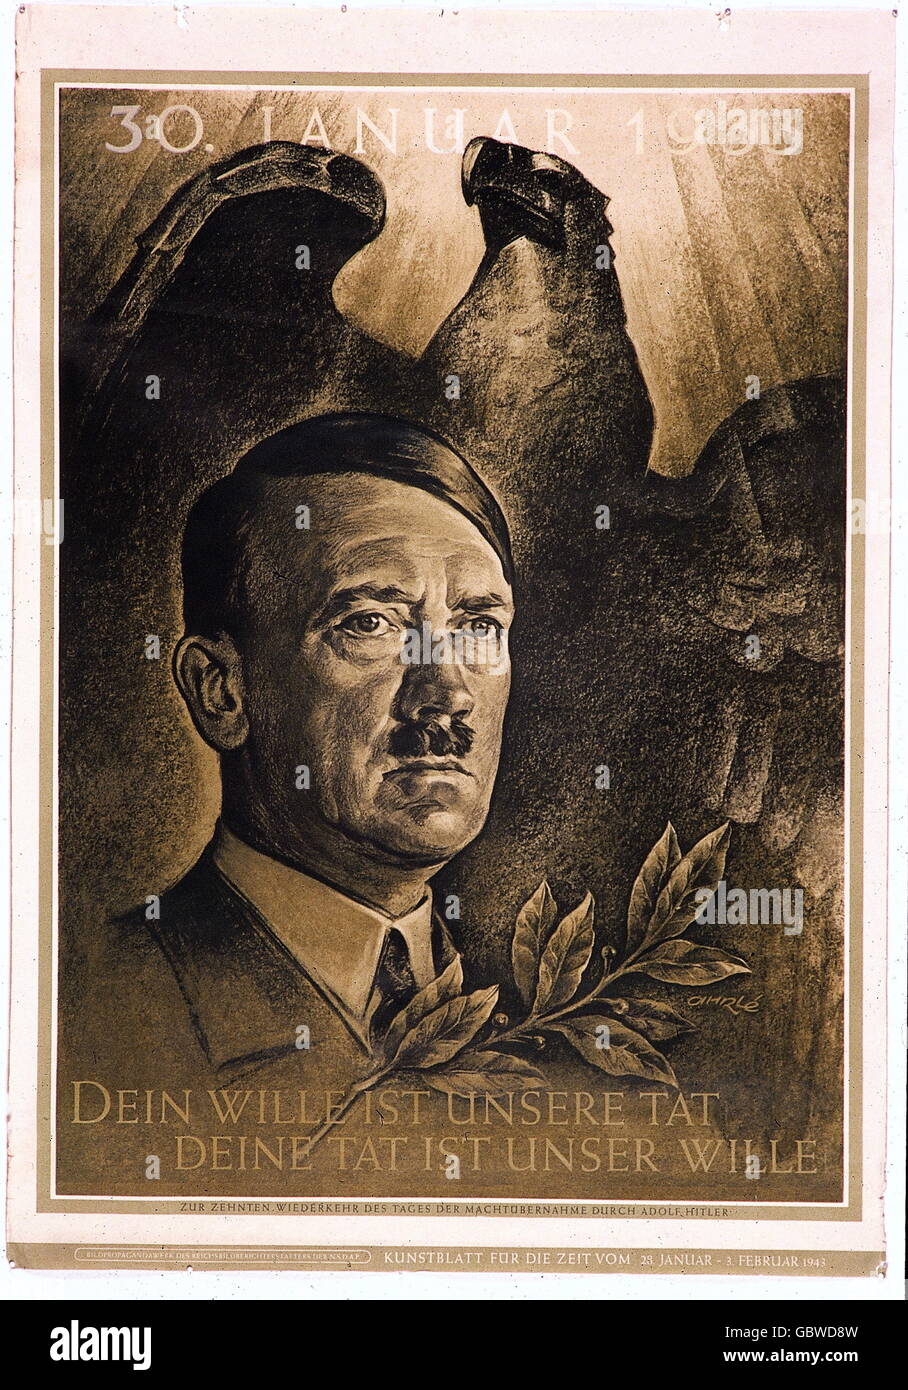 Nationalsozialismus, Propaganda, Kunstdruck, anlässlich des 10. Jahrestages der Machtübernahme Adolf Hitlers (30.1.1933), 1943, Zusatzrechte-Clearences-nicht vorhanden Stockfoto